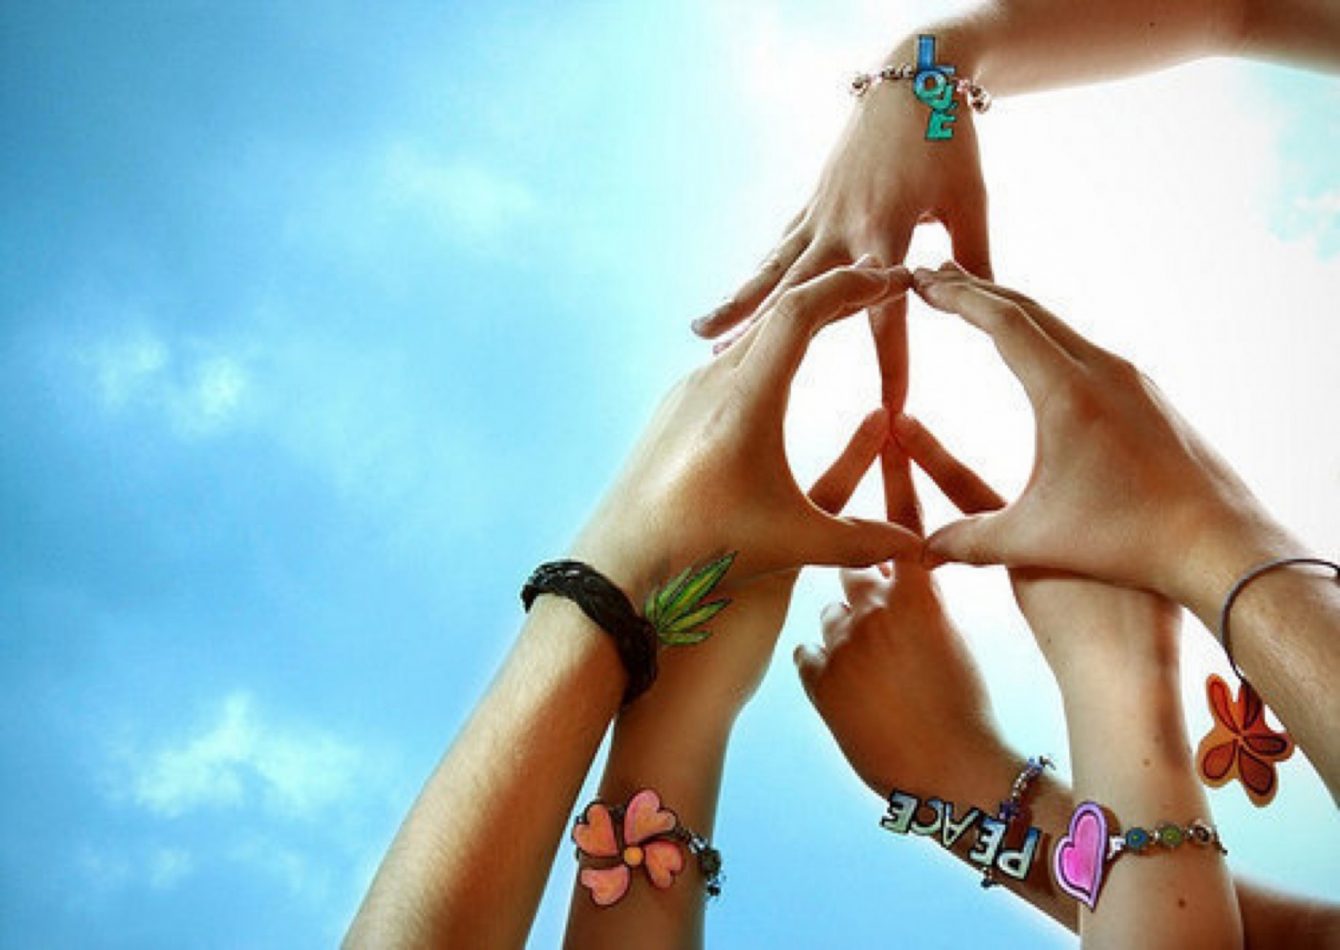 Κάθε χρόνο στις 21 Σεπτεμβρίου γιορτάζεται η Παγκόσμια Ημέρα Ειρήνης, μια «γιορτή» που καθιέρωσε ο Οργανισμός Ηνωμένων Εθνών